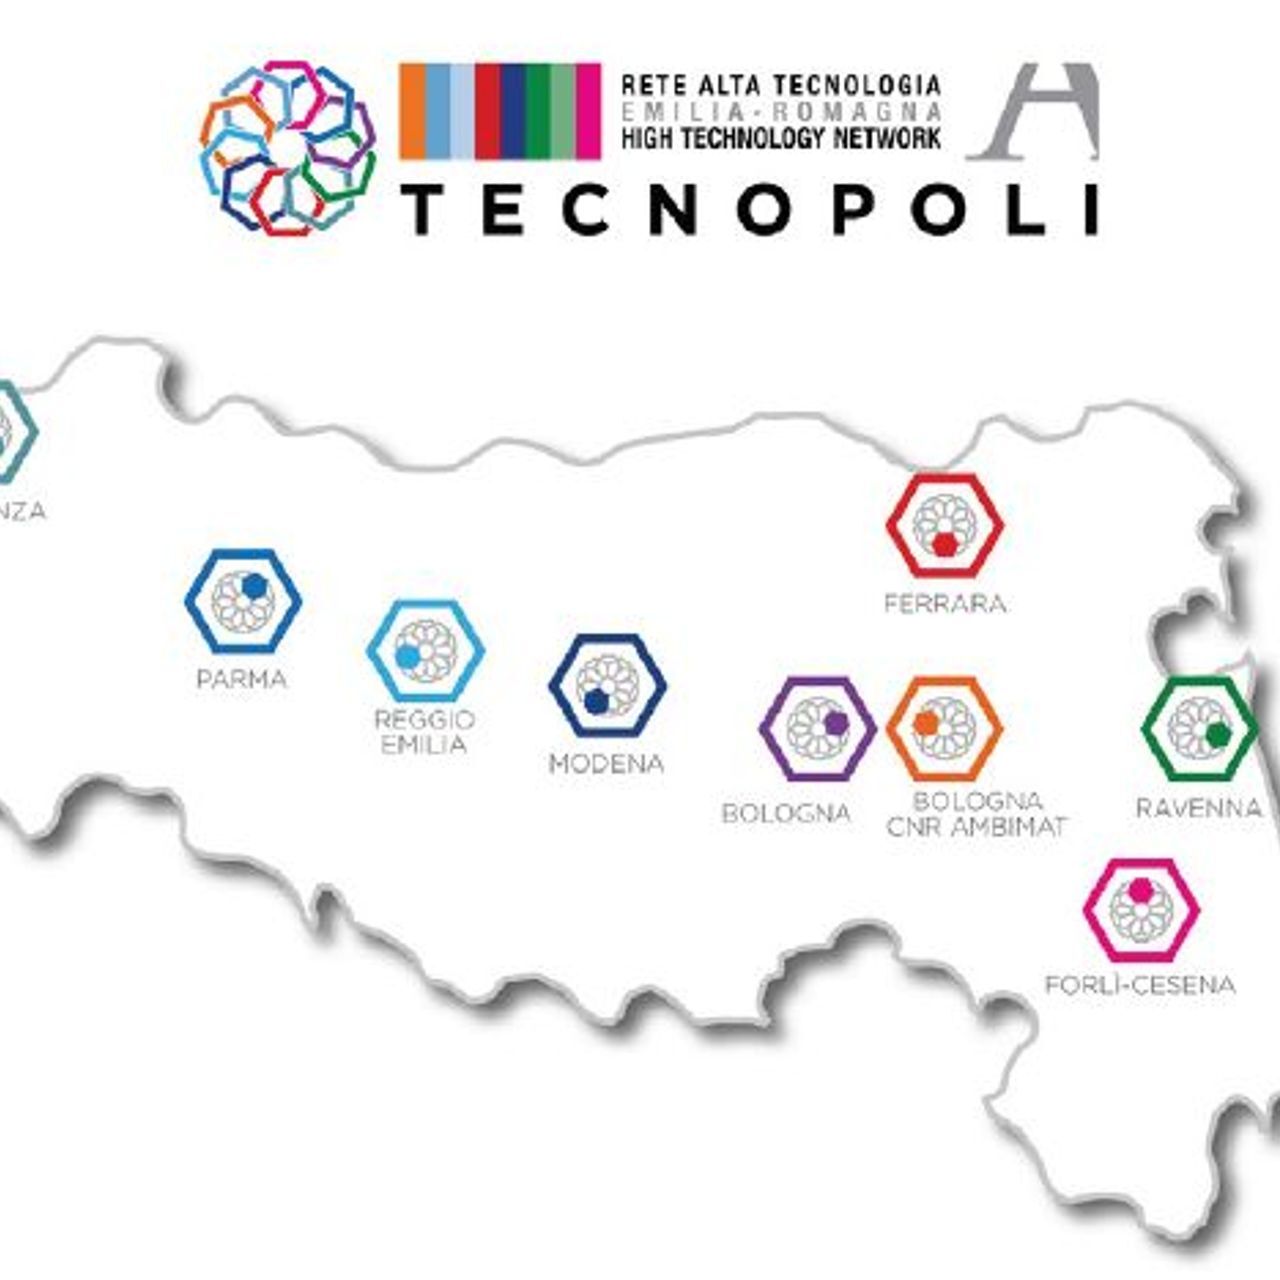 Lo High Technology Network della Regione Emilia-Romagna